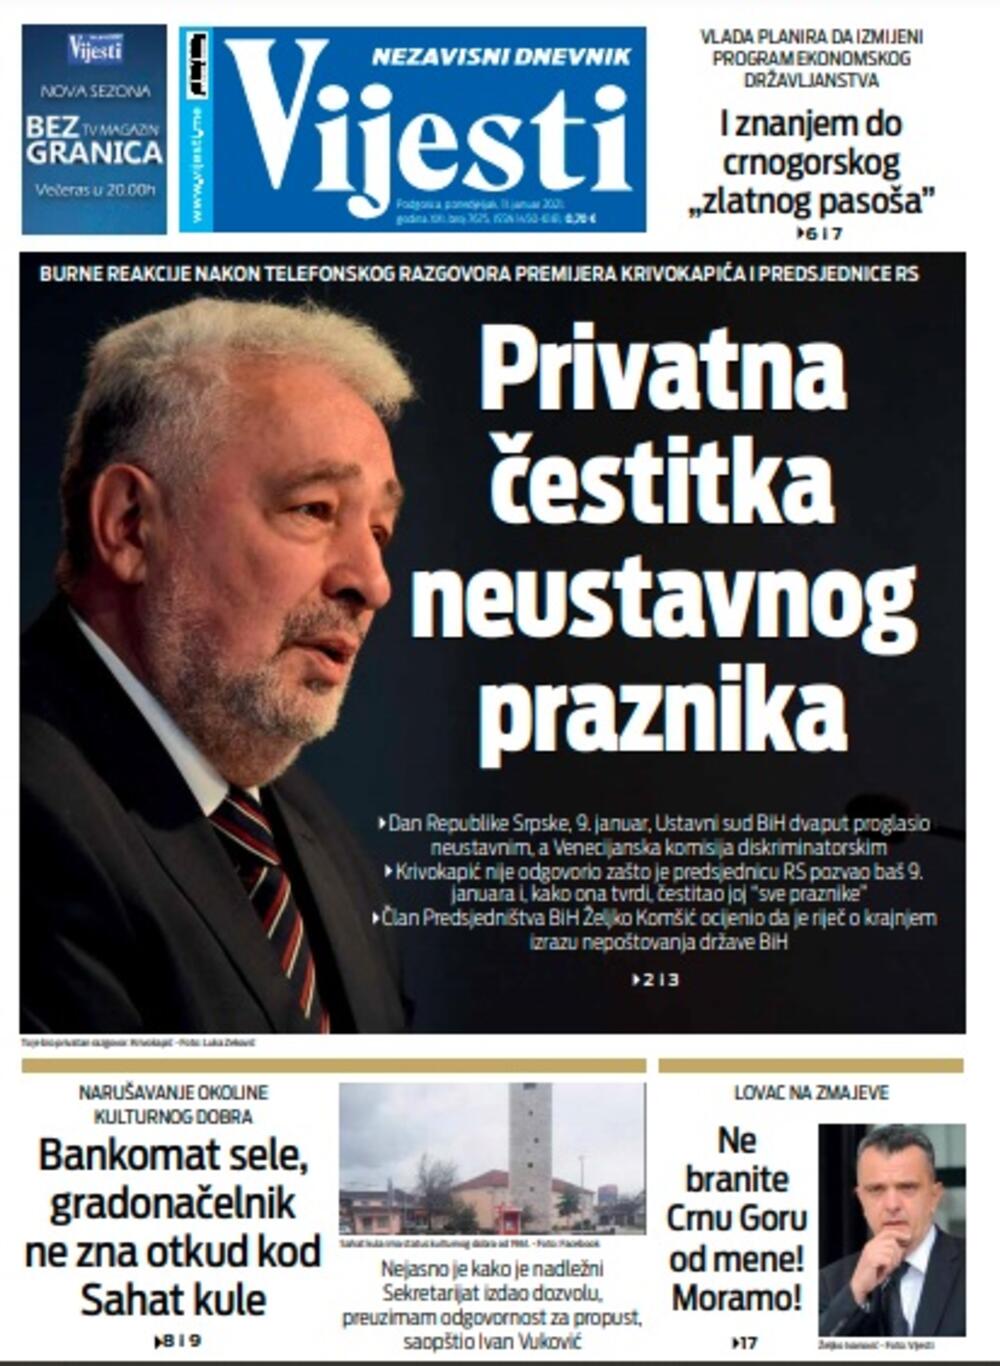 Naslovna strana "Vijesti" za ponedjeljak 11. januar 2021. godine, Foto: Vijesti